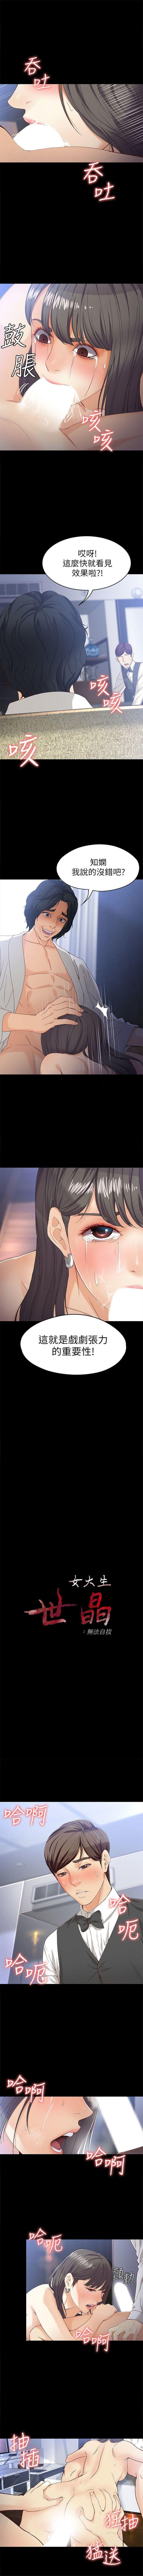 女大生世晶:无法自拔 1-30 中文翻译 （更新中） 180